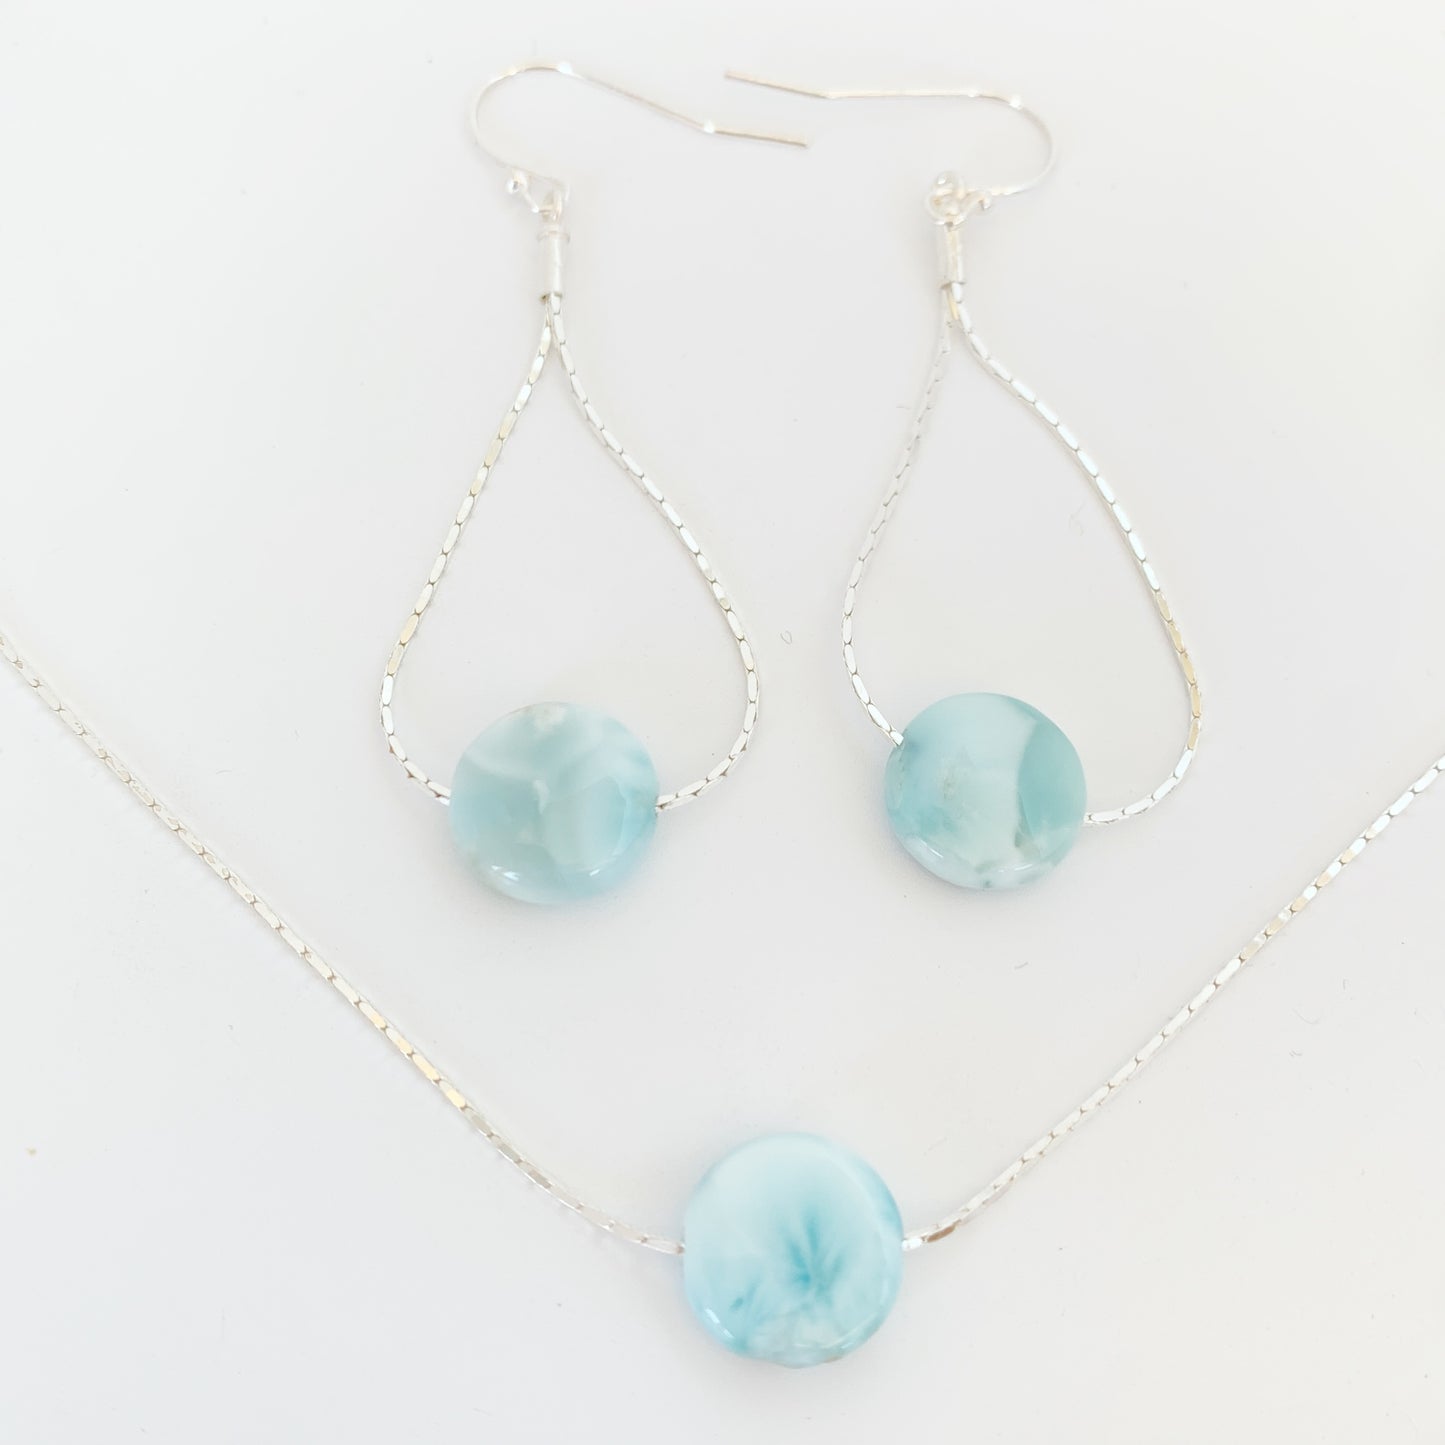 Bahamas Blue pendant and earrings set